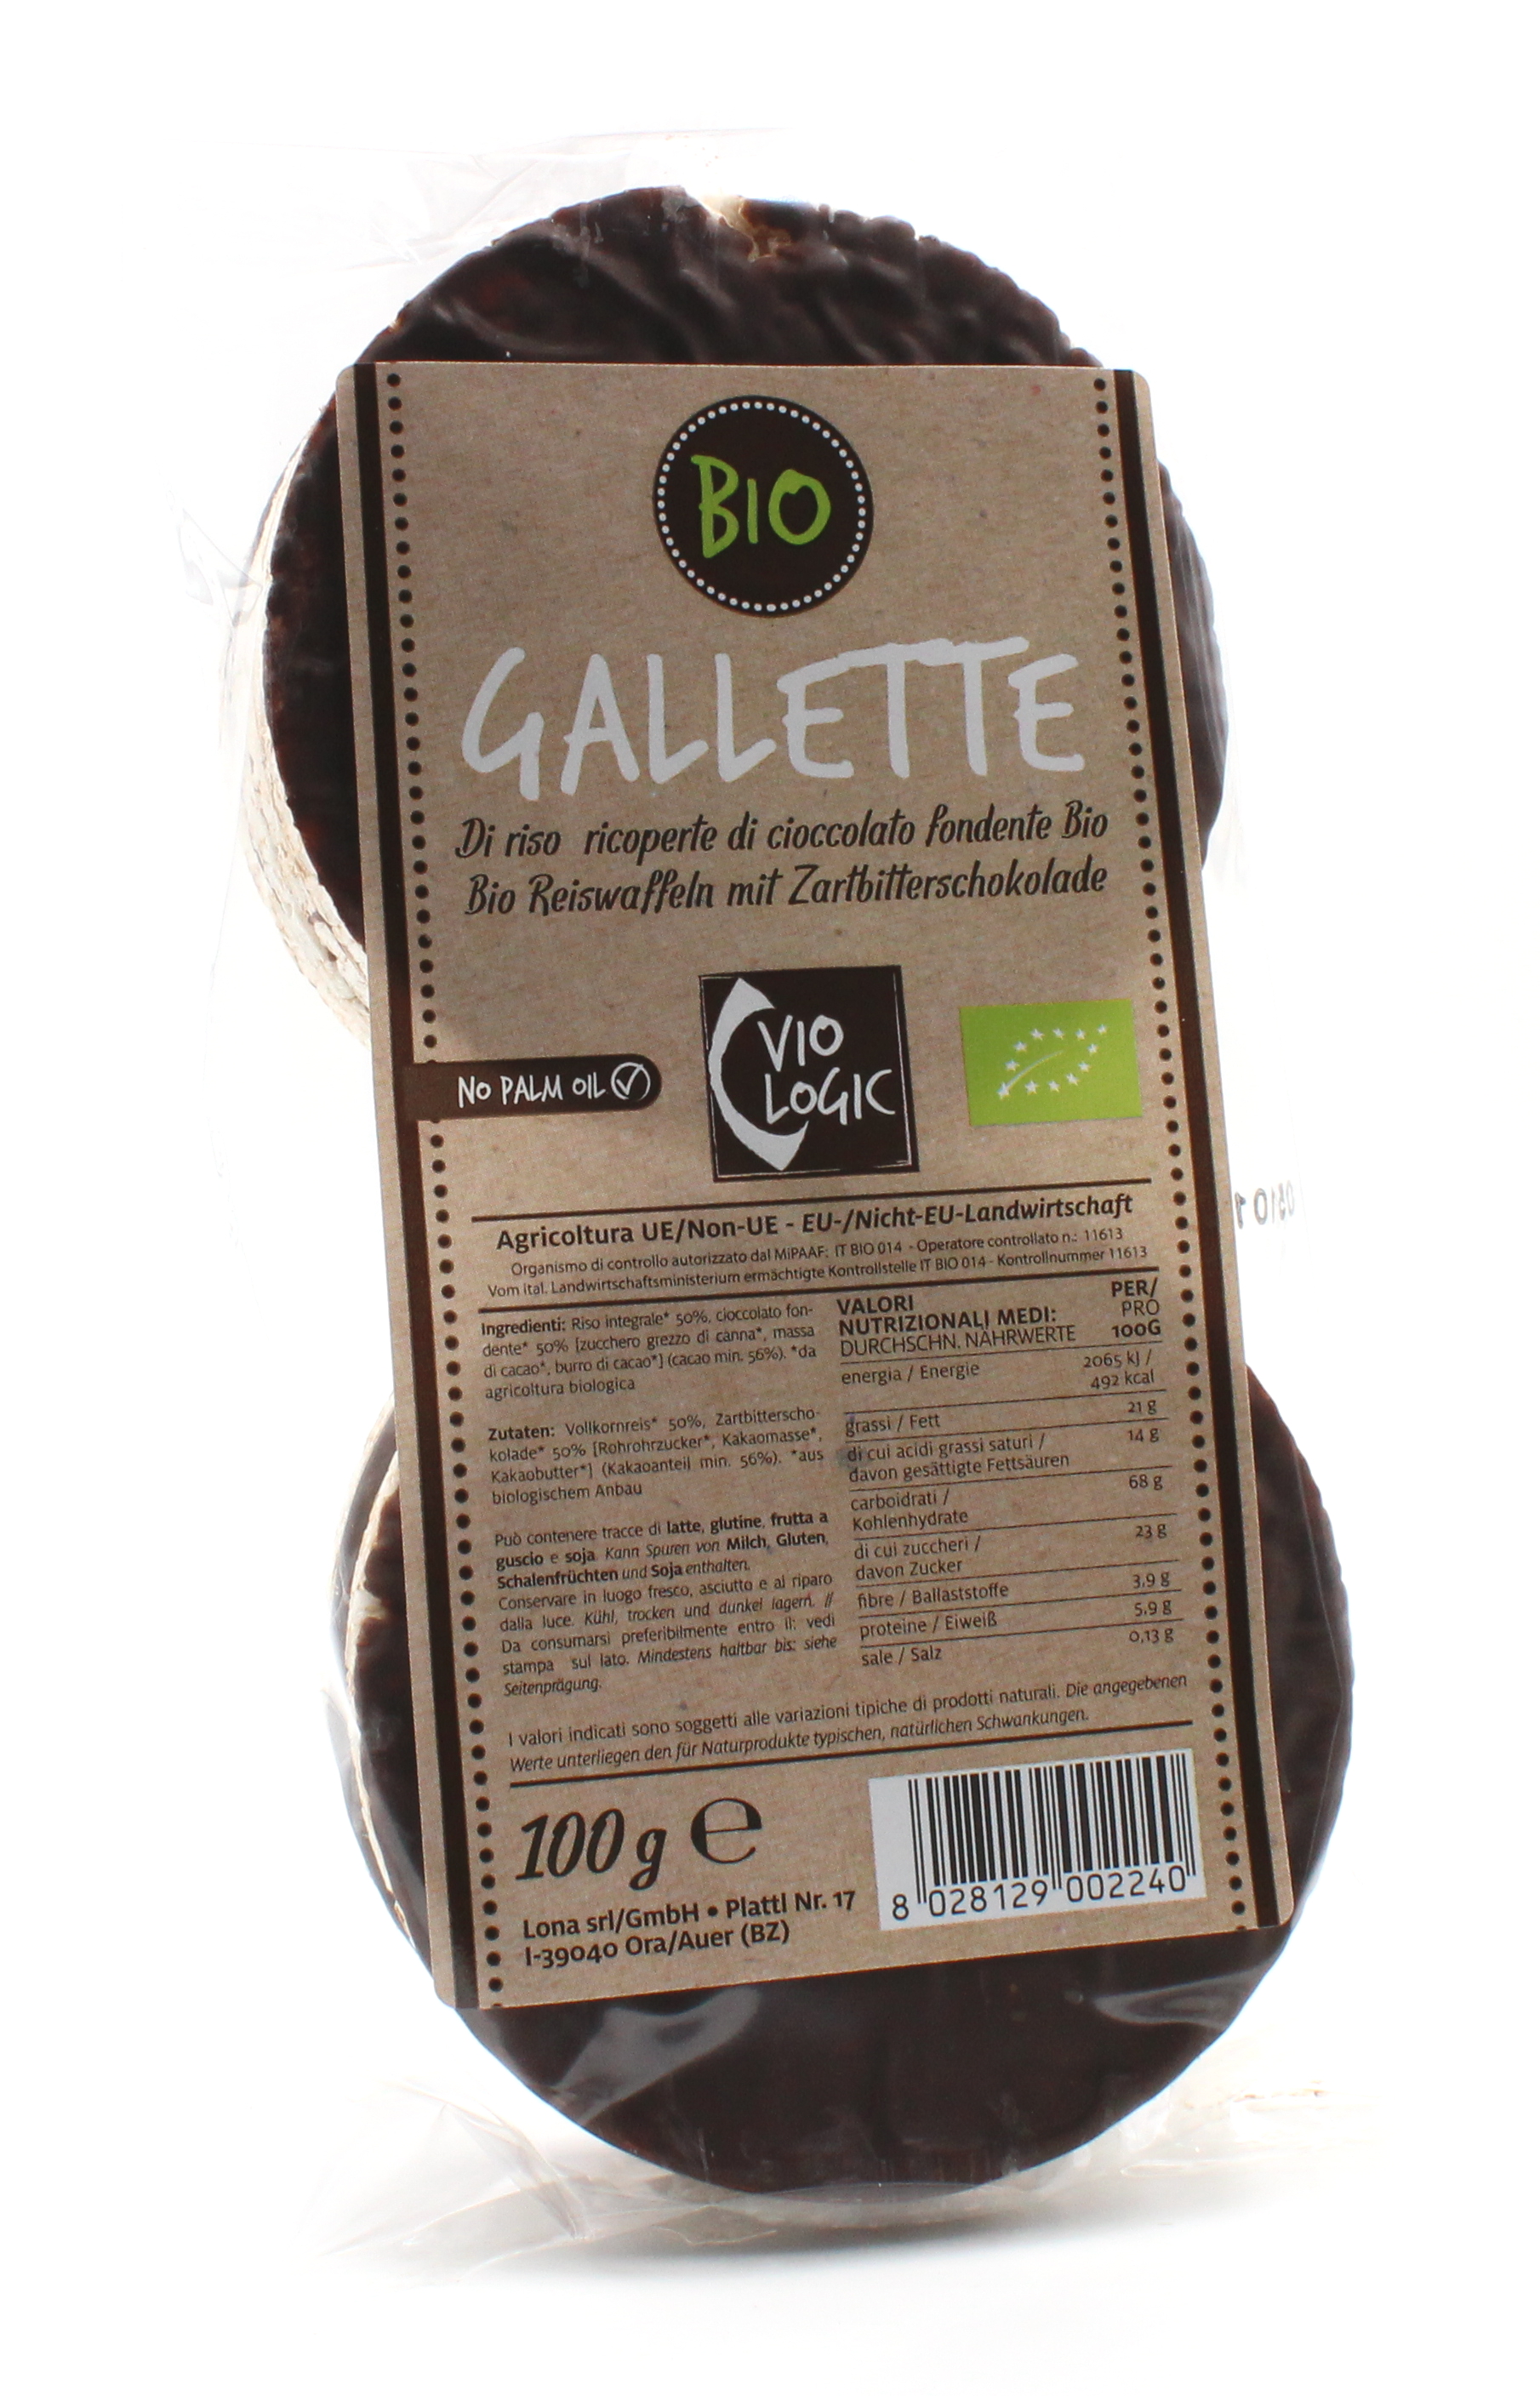 Gallette di riso ricoperte di cioccolato fondente bio 100g